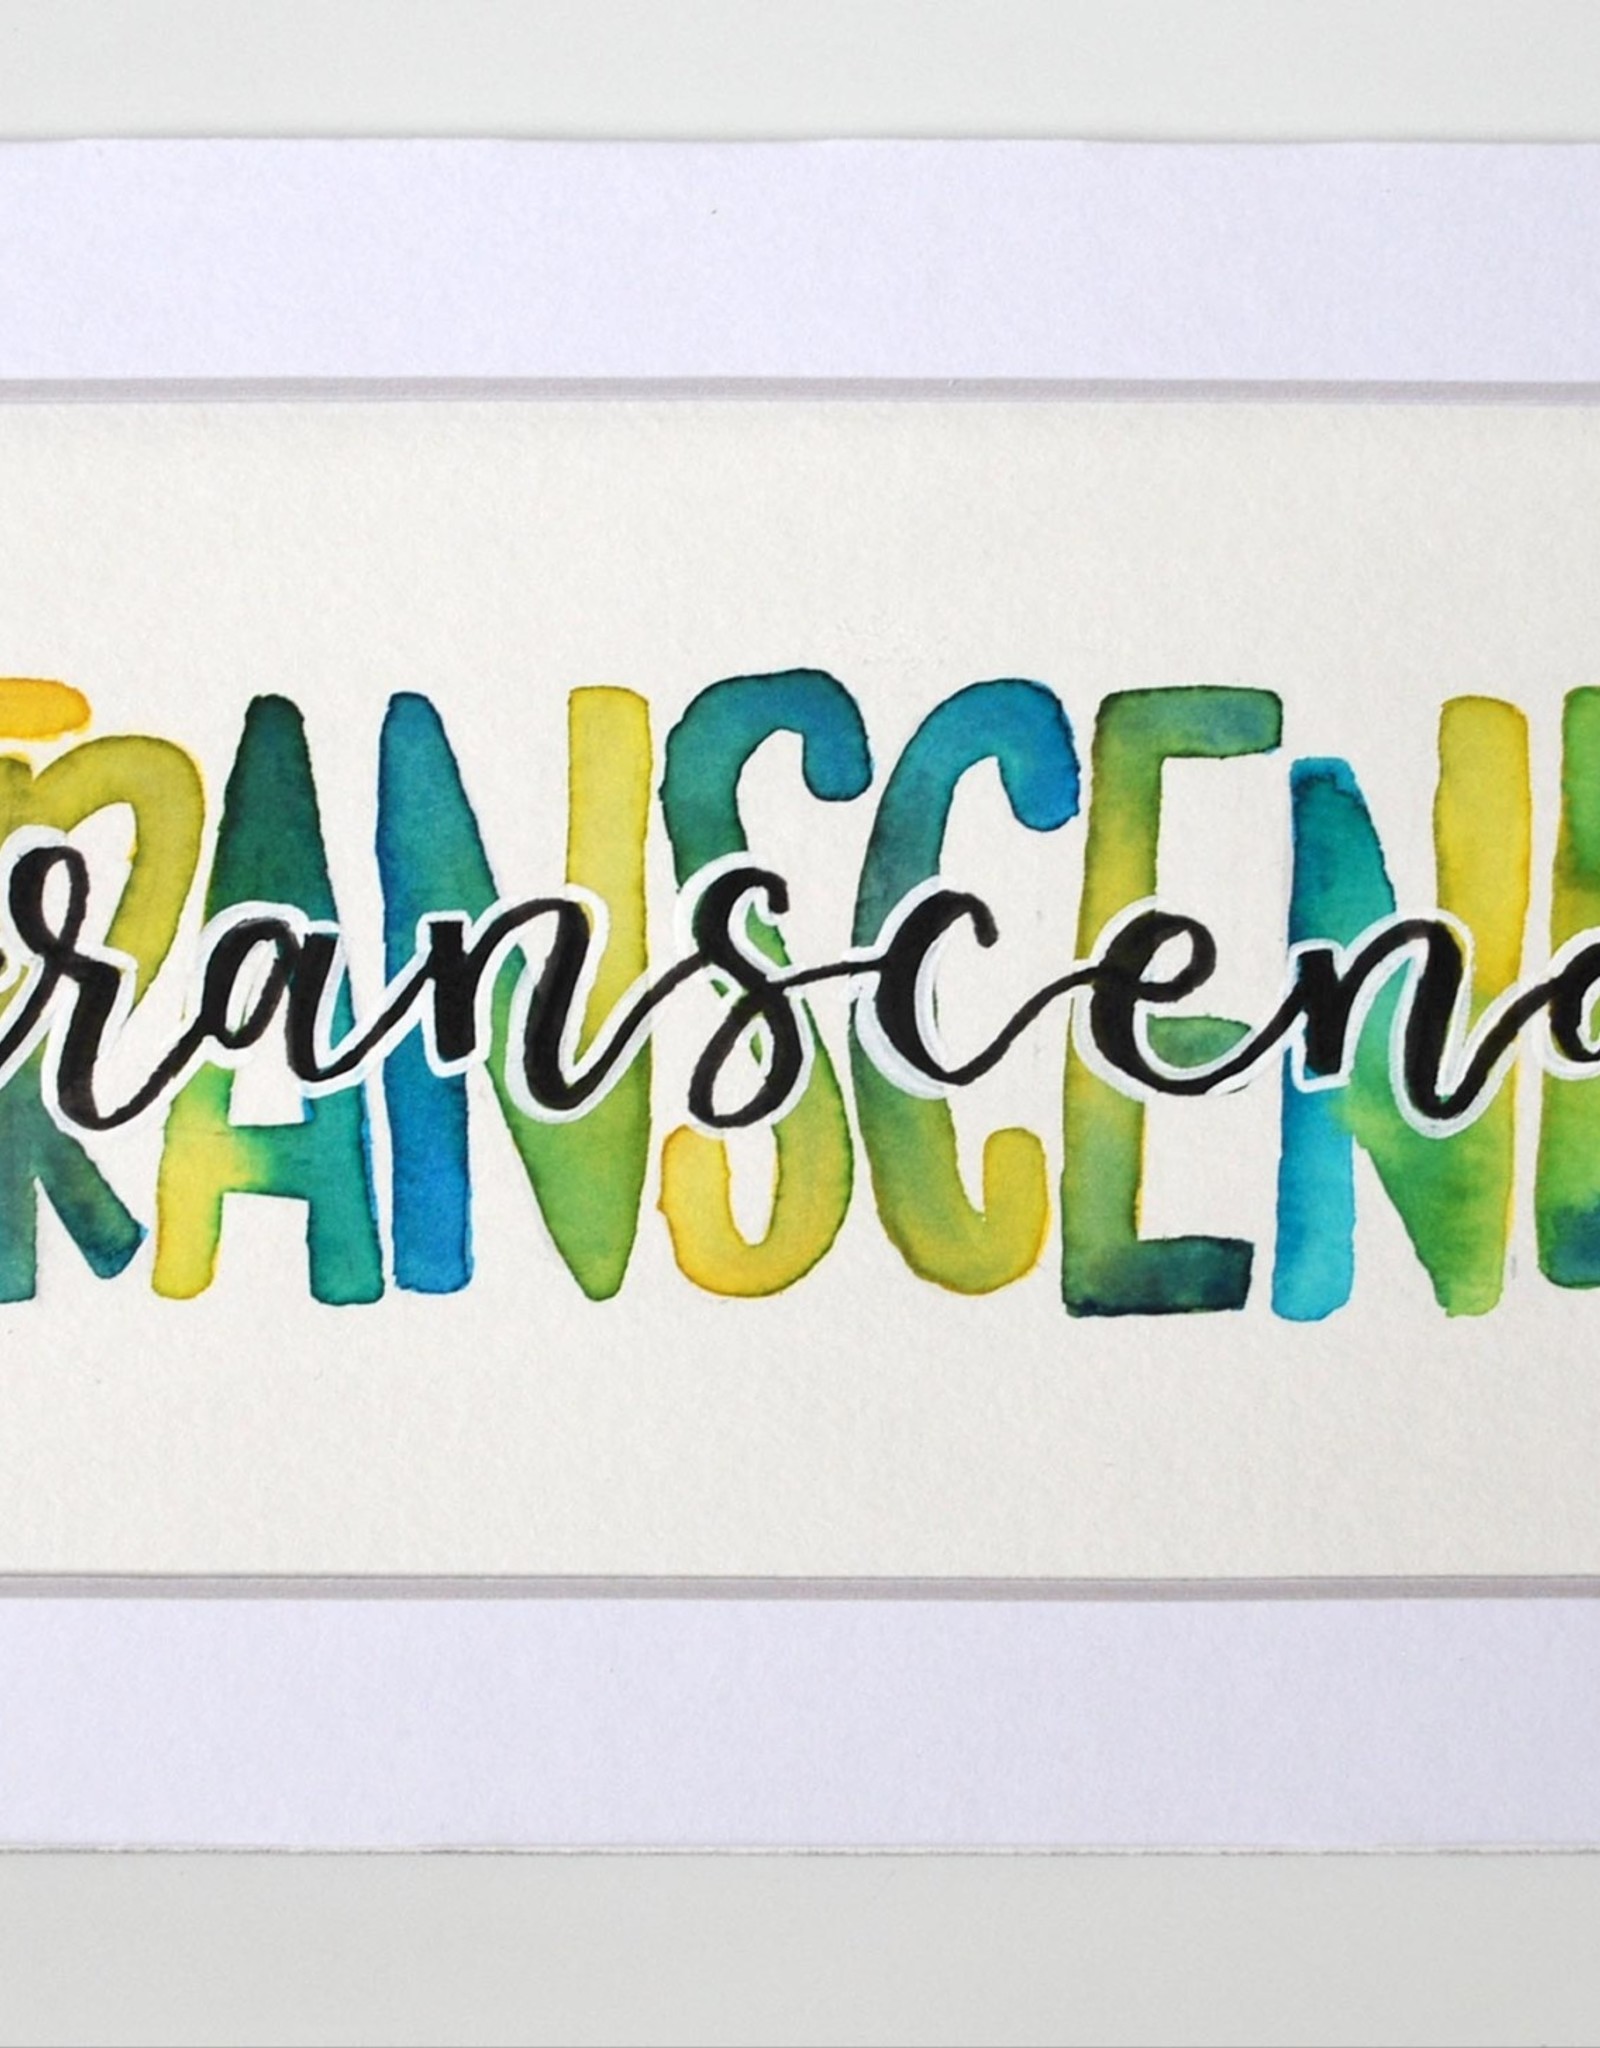 Watercolor Positivity "Transcend" by Jennifer Pollack